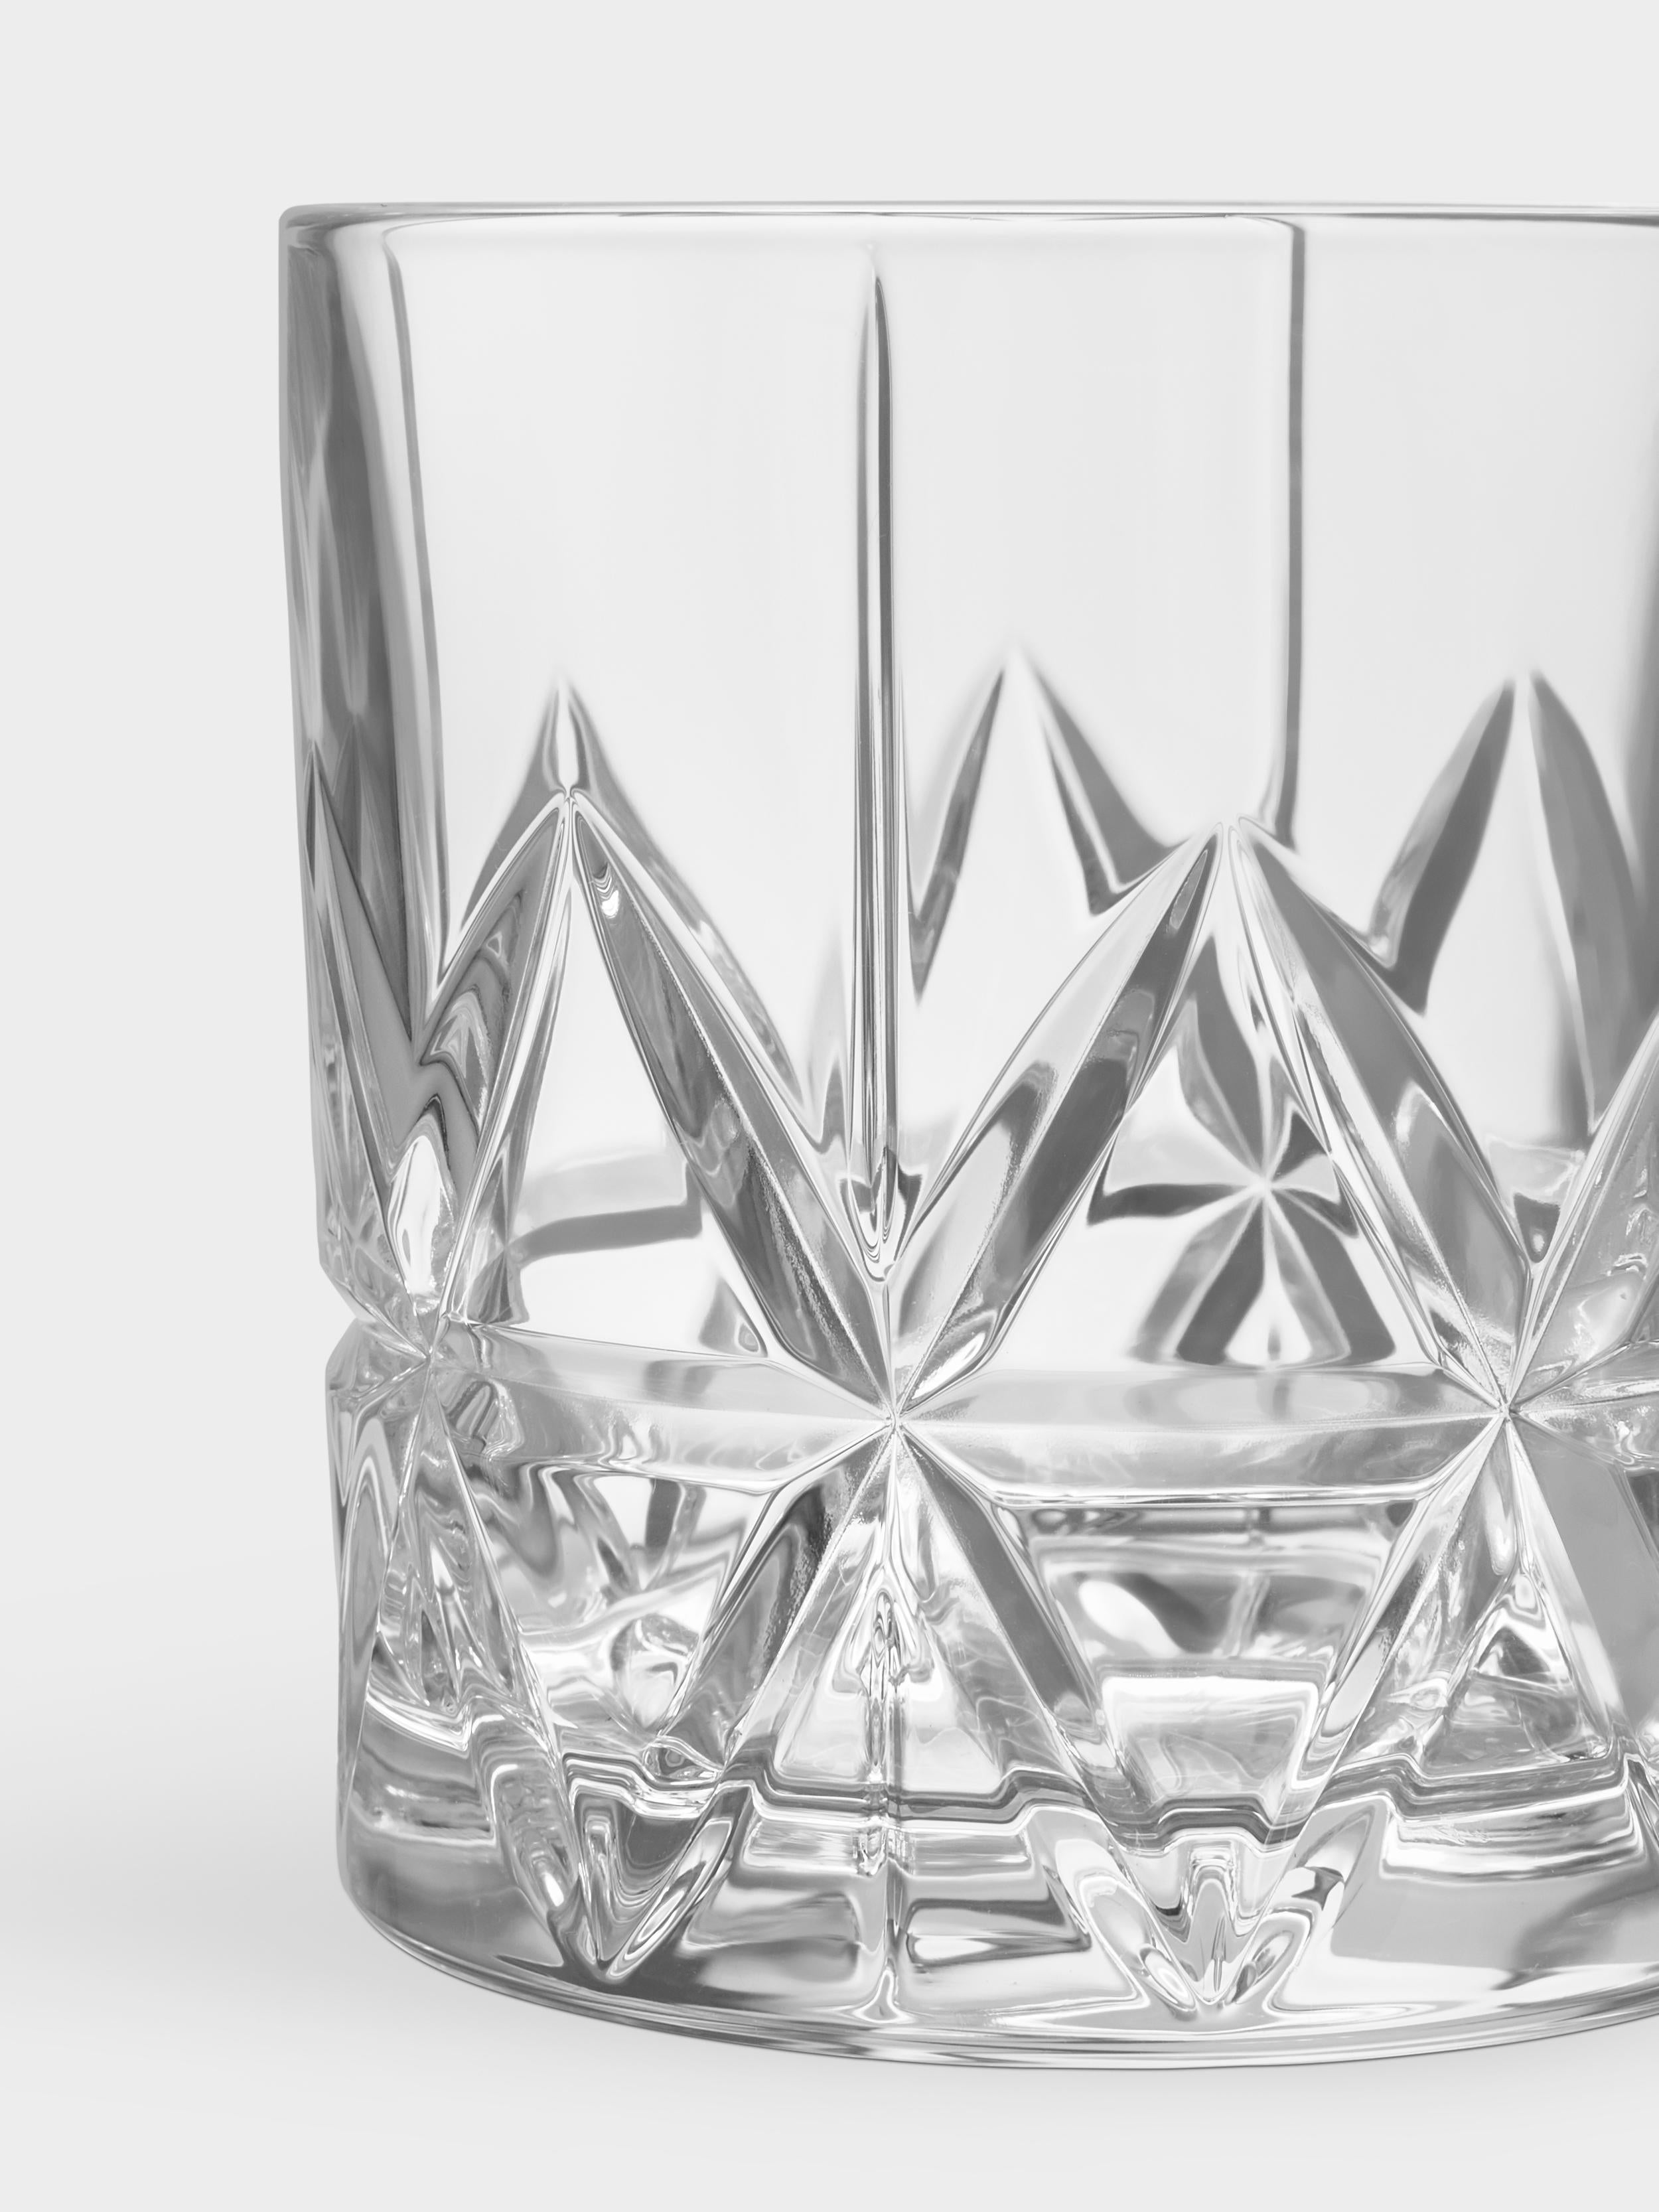 Le verre Peak Double Old Fashioned d'Orrefors, d'une contenance de 11,5 oz, est un verre de bar idéal pour les spiritueux et les cocktails. Le motif du verre s'inspire des majestueux pics montagneux des régions septentrionales de la Scandinavie.